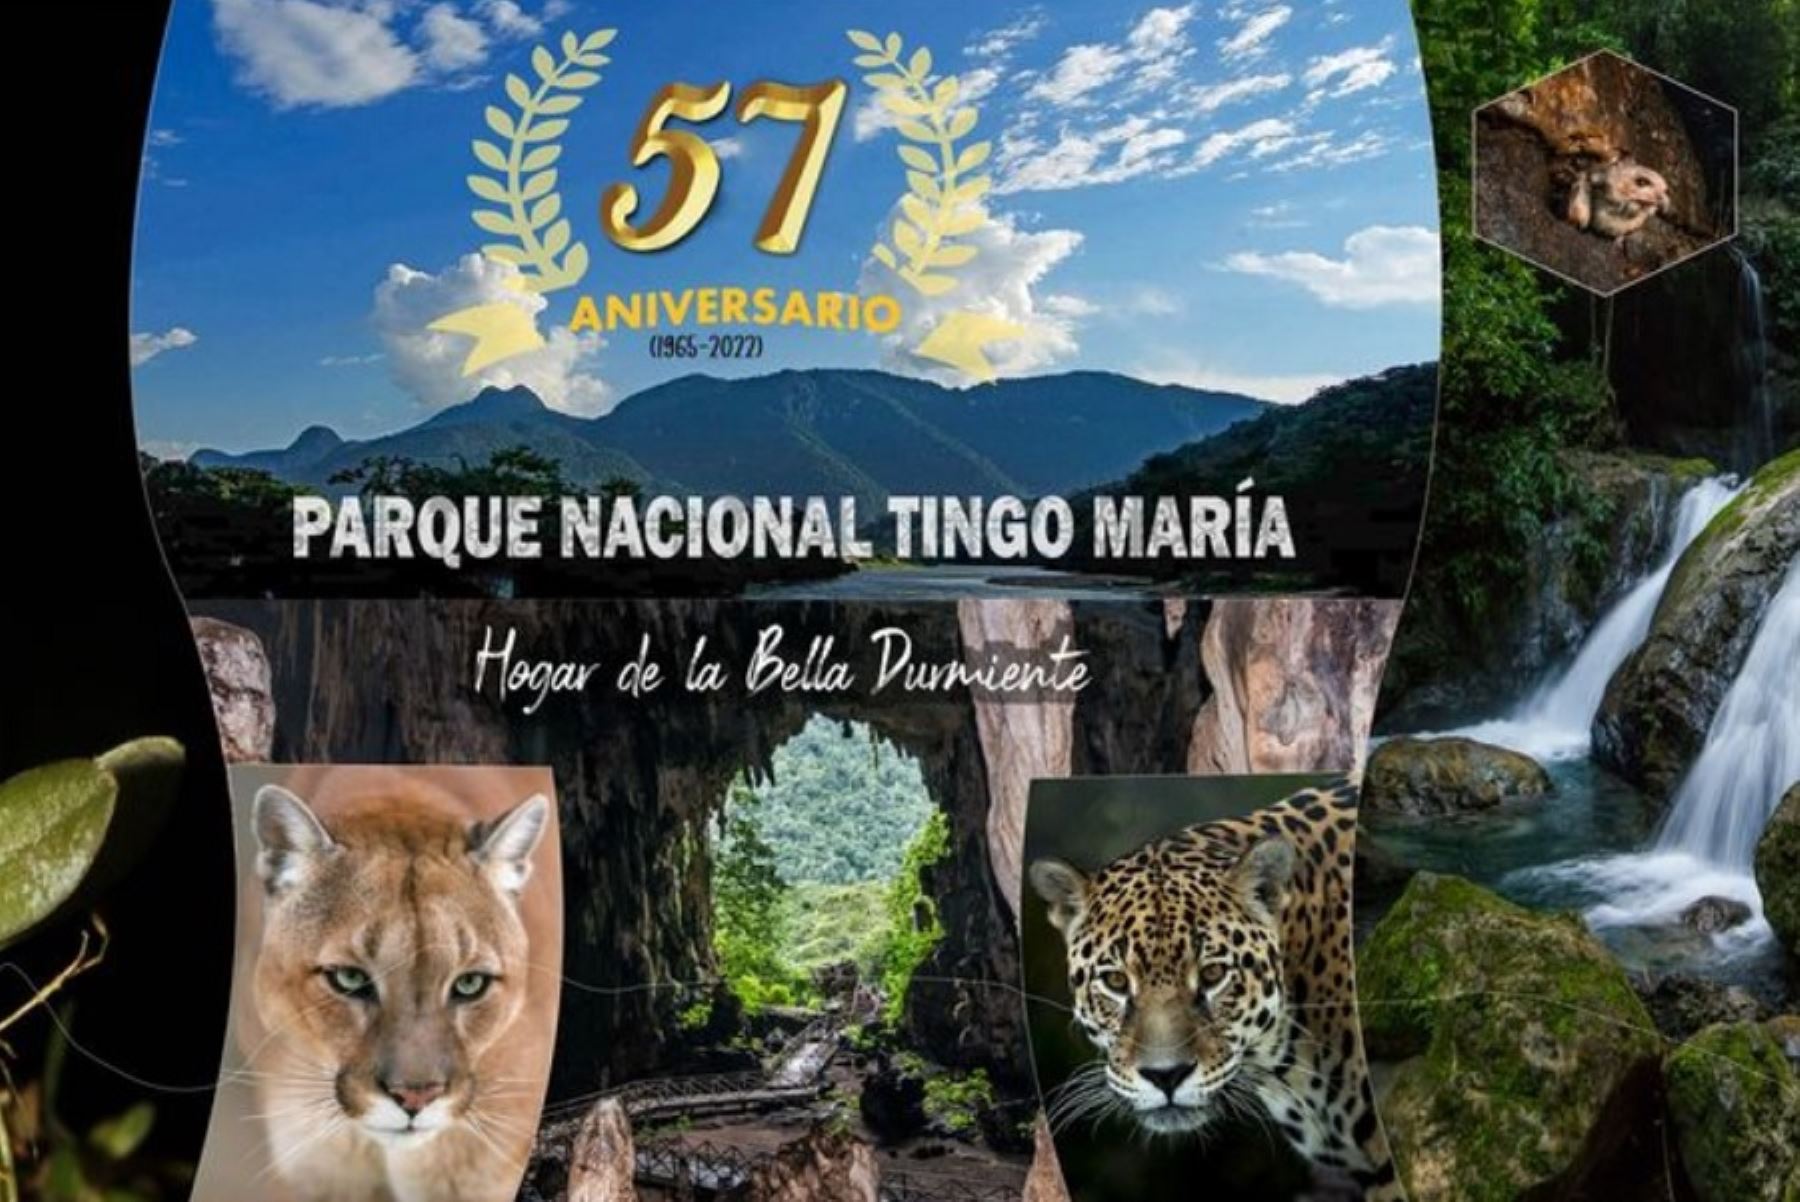 El Parque Nacional Tingo María fue creada como área natural protegida por el Estado el 14 de mayo de 1965, con el objetivo de conservar la excepcional flora y fauna silvestres que alberga, así como para garantizar el desarrollo socio económico de las poblaciones aledañas y fomentar el turismo local.